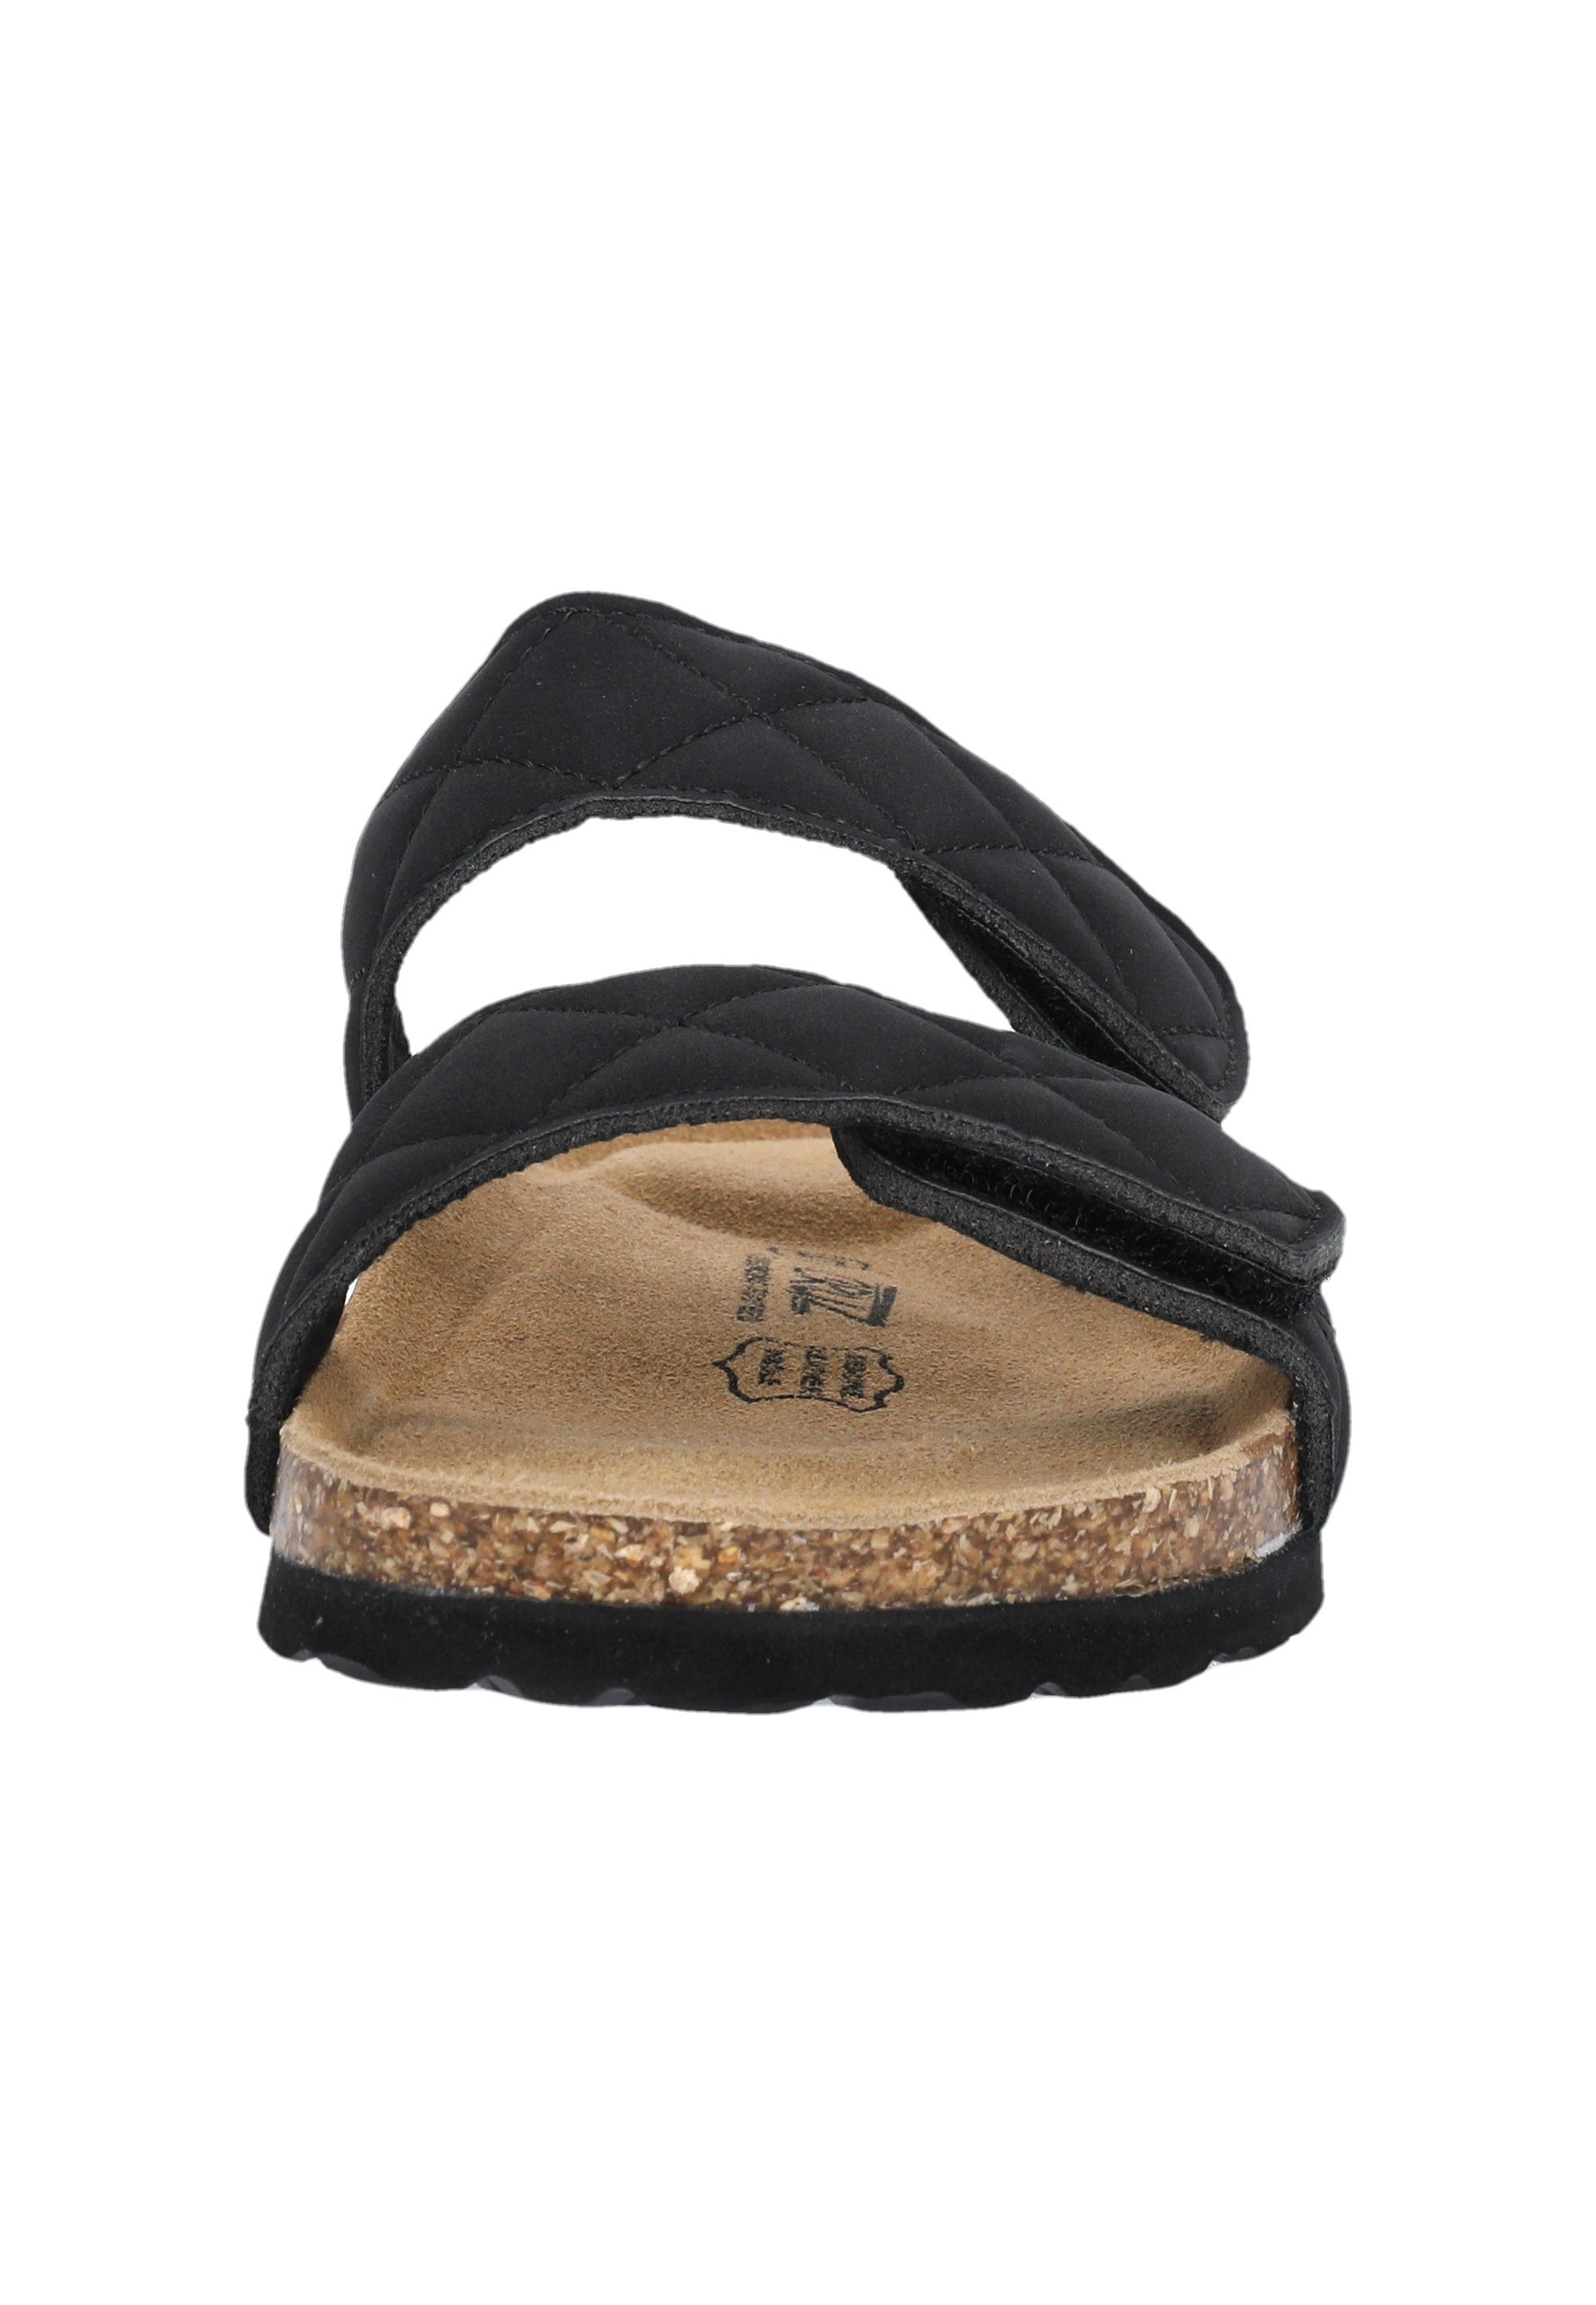 CRUZ Liland Sandale Klettverschluss mit praktischem schwarz